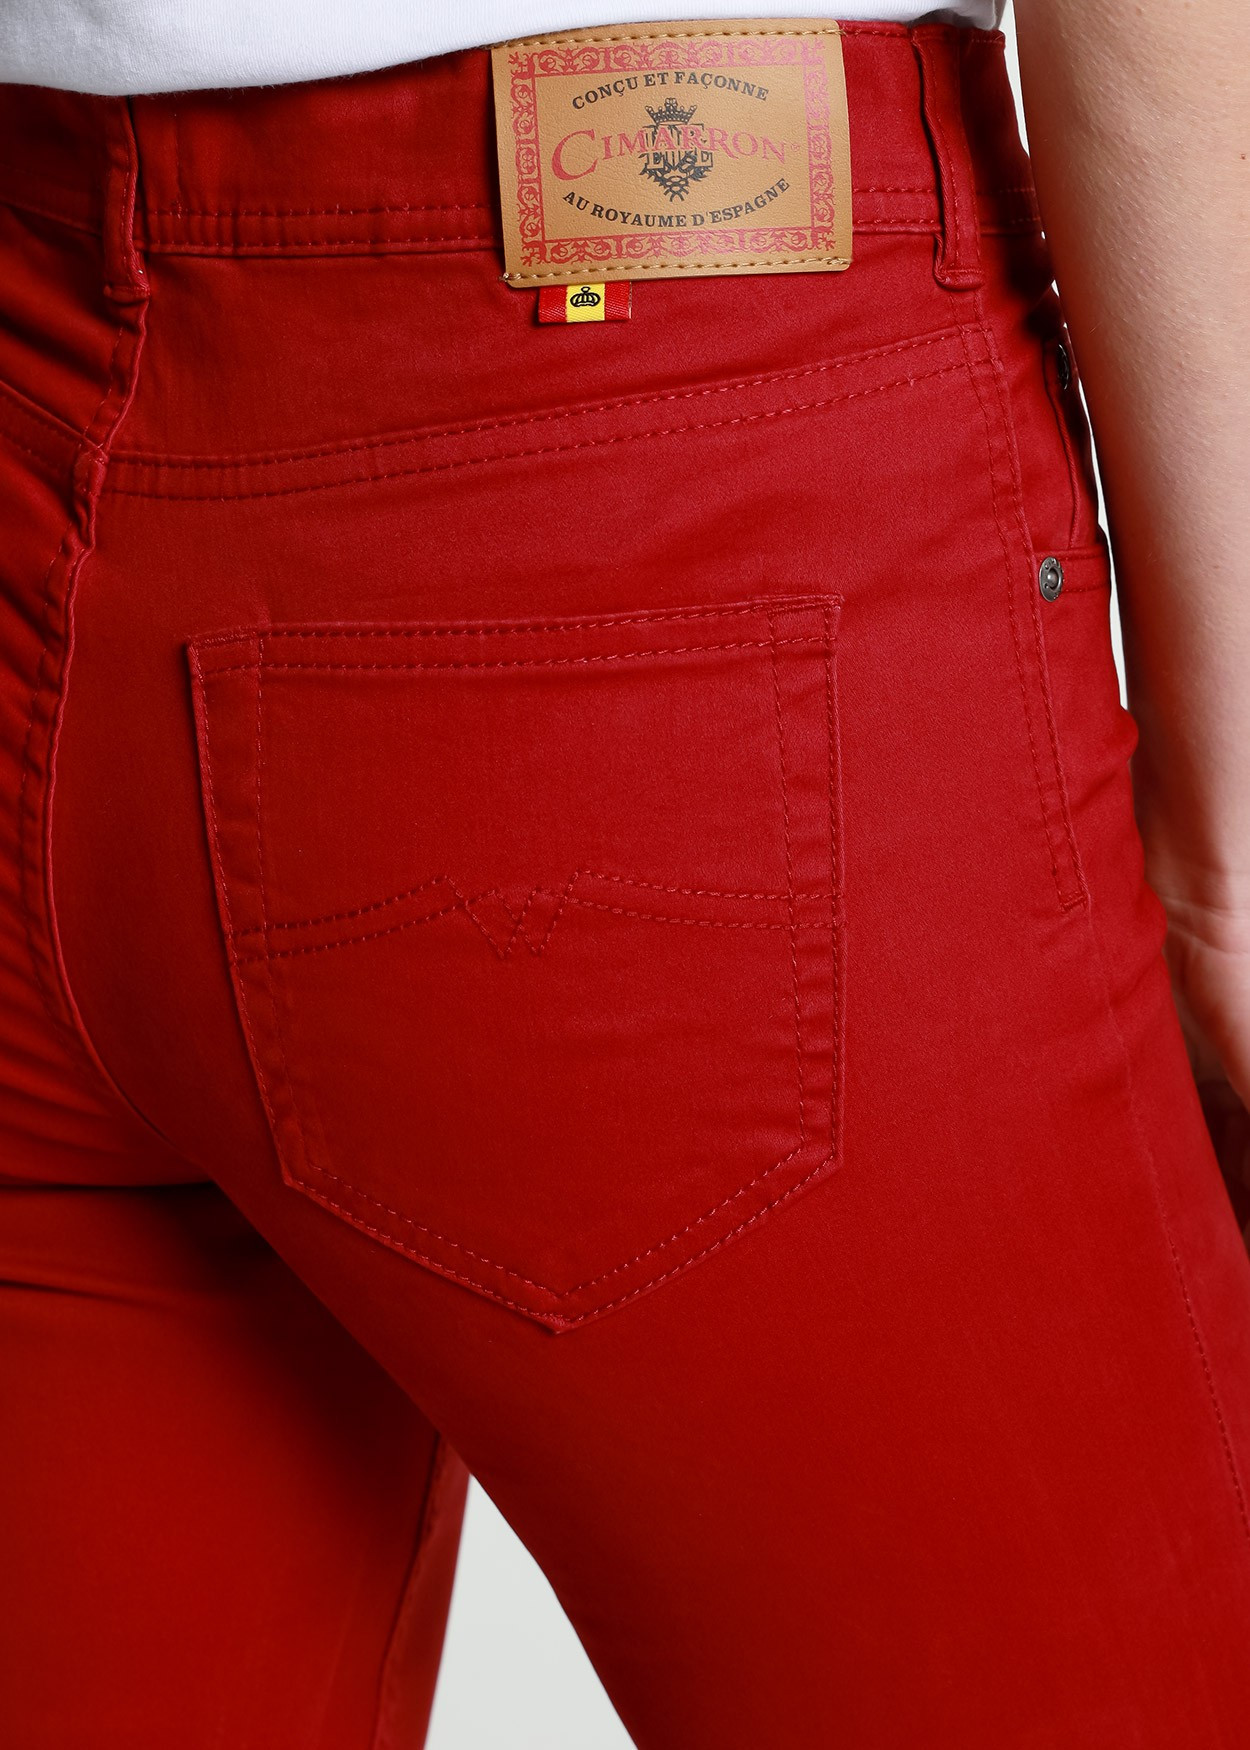 Pantalon Nouflore-Raso Cimarron